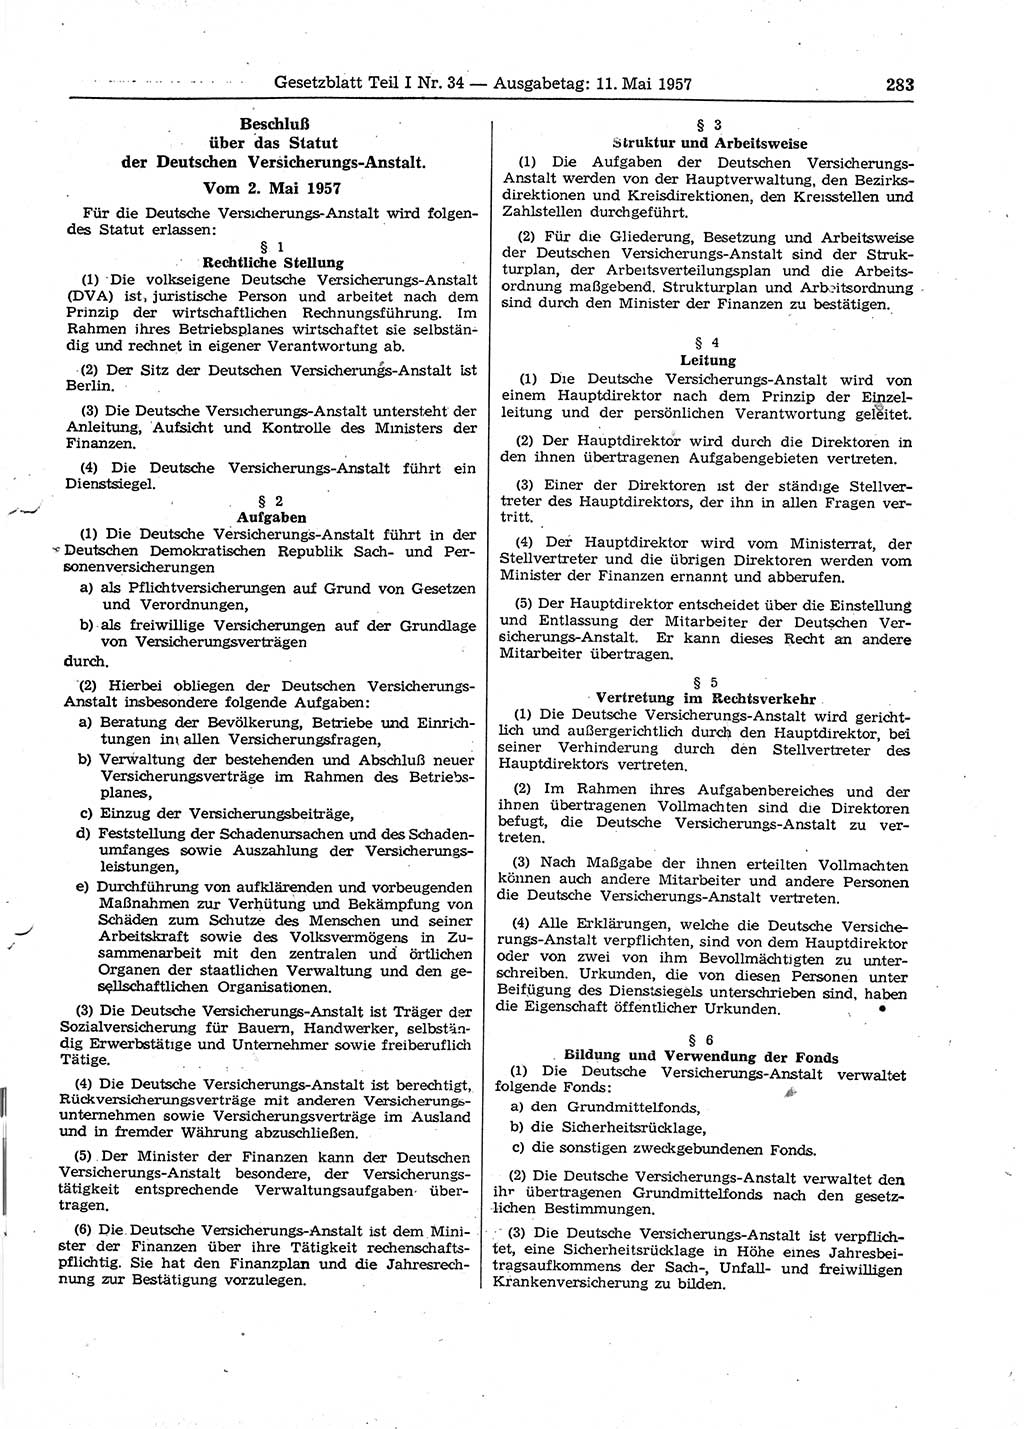 Gesetzblatt (GBl.) der Deutschen Demokratischen Republik (DDR) Teil Ⅰ 1957, Seite 283 (GBl. DDR Ⅰ 1957, S. 283)